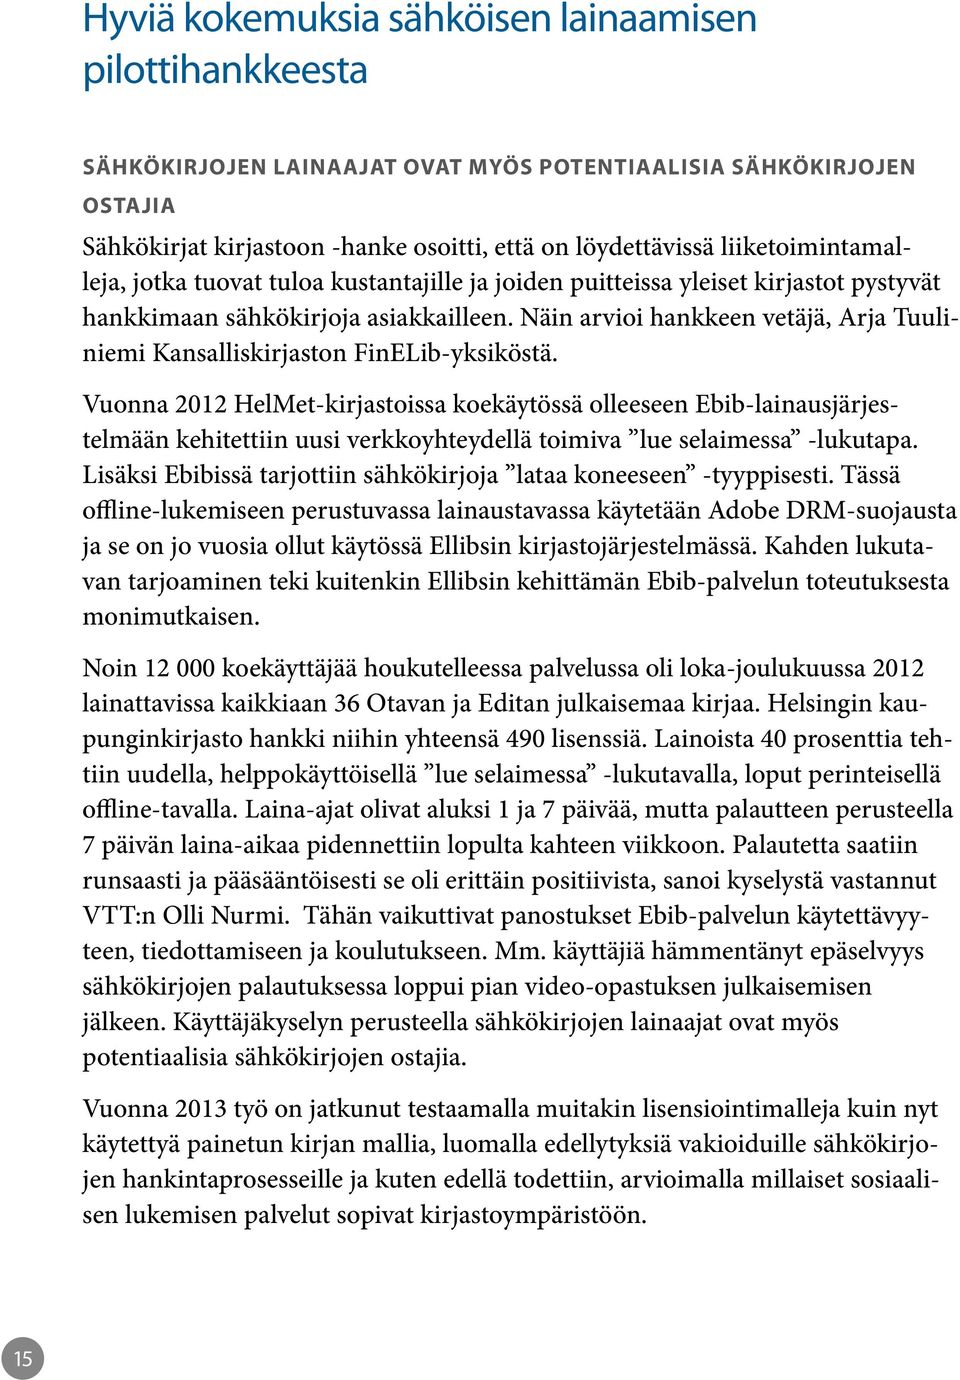 Näin arvioi hankkeen vetäjä, Arja Tuuliniemi Kansalliskirjaston FinELib-yksiköstä.